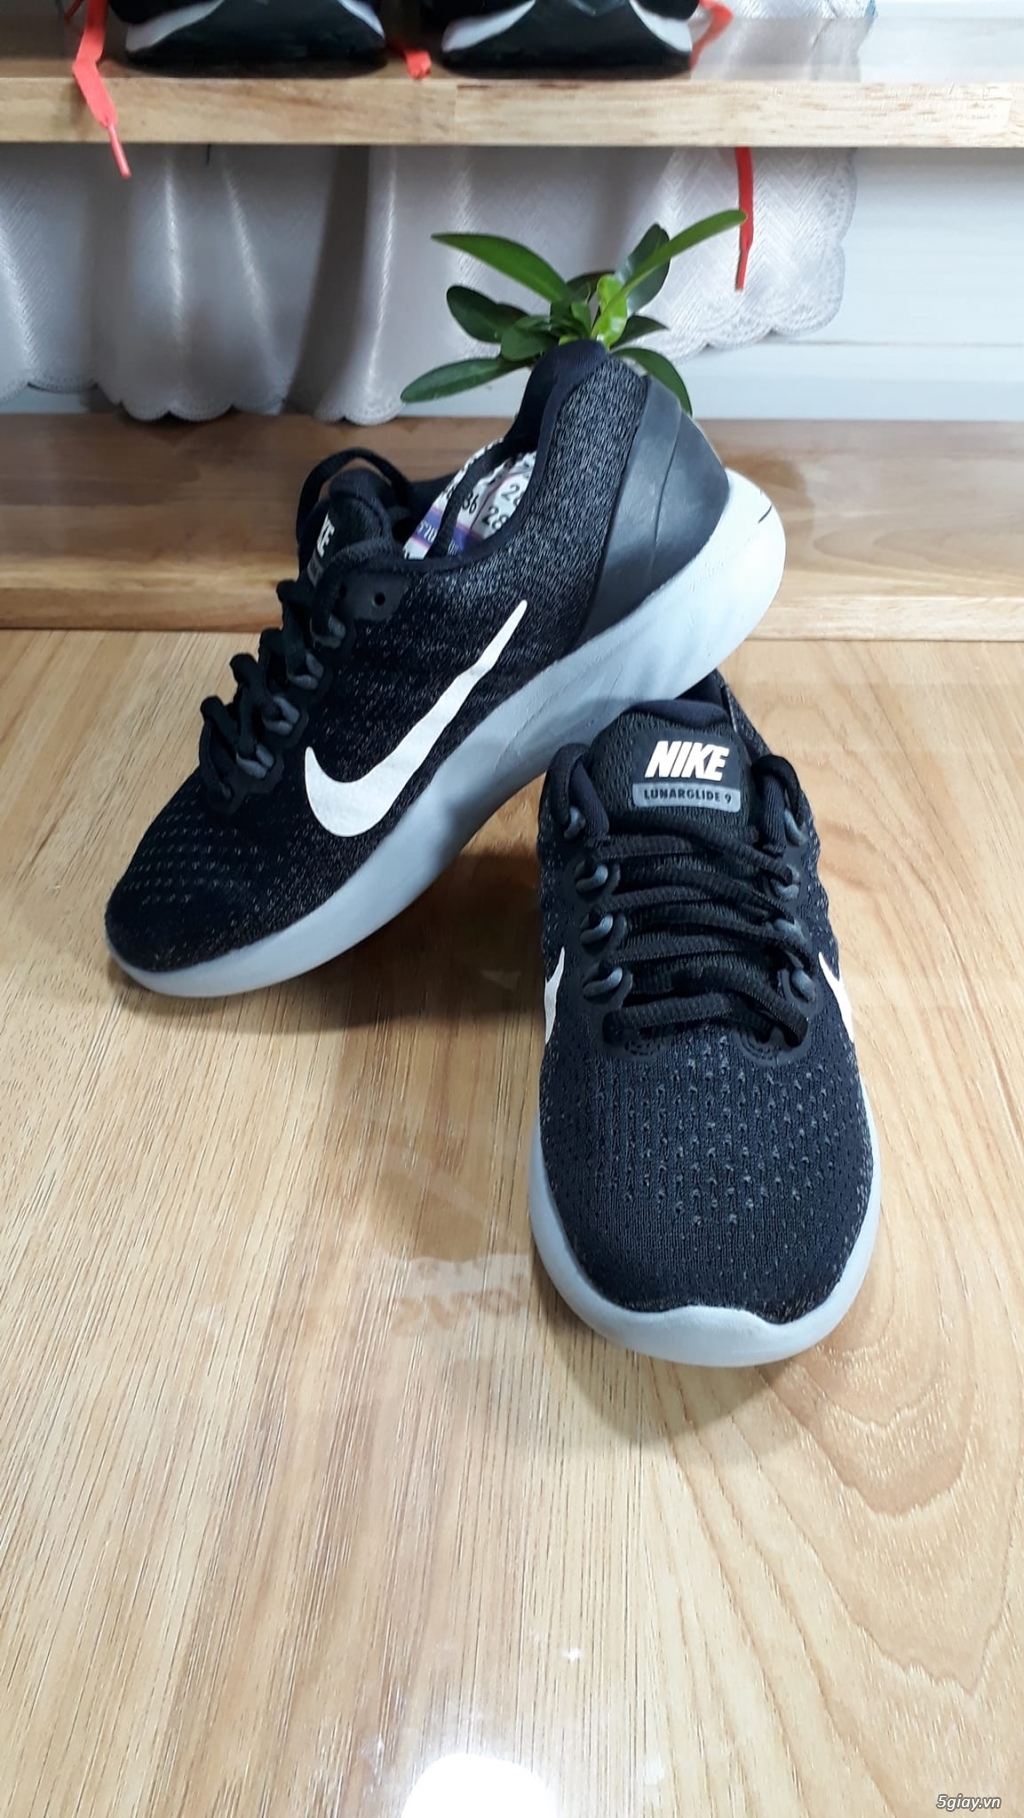 Giày Nike size 35VN 2hand chính hãng - Giày cũ Mỹ Thái Q7